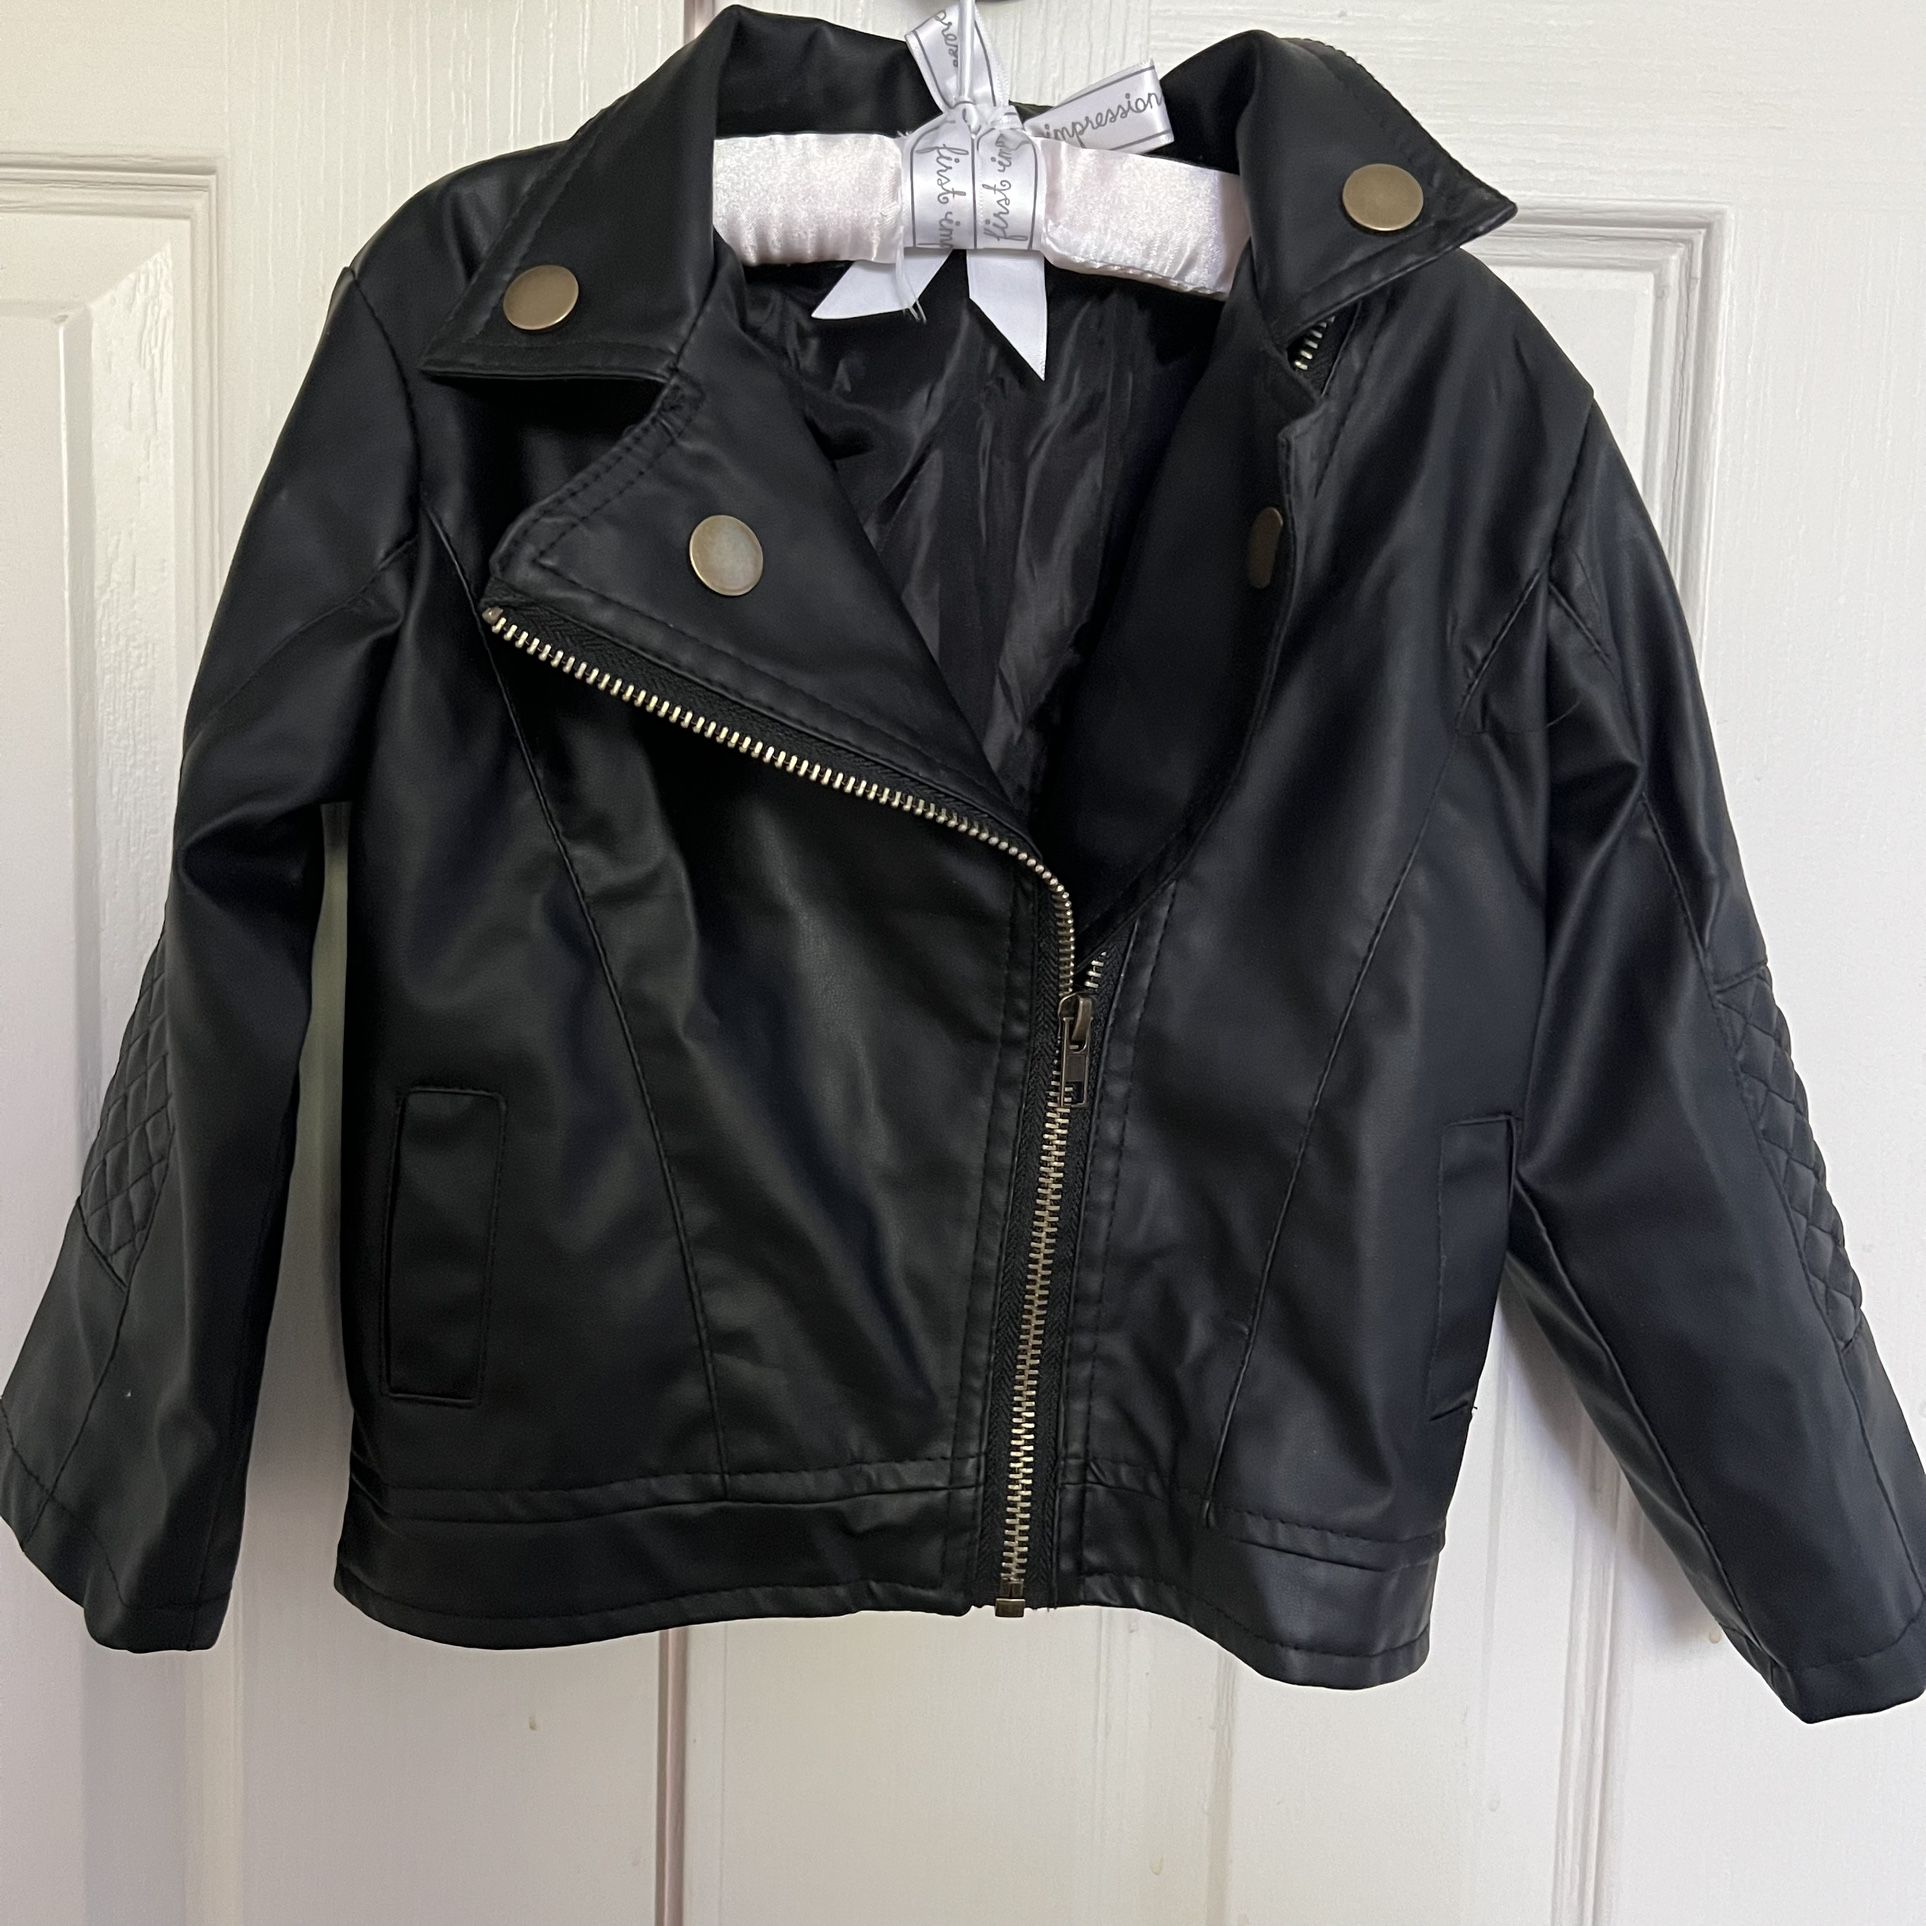 Stylish Toddler Leather Jacket 2T 